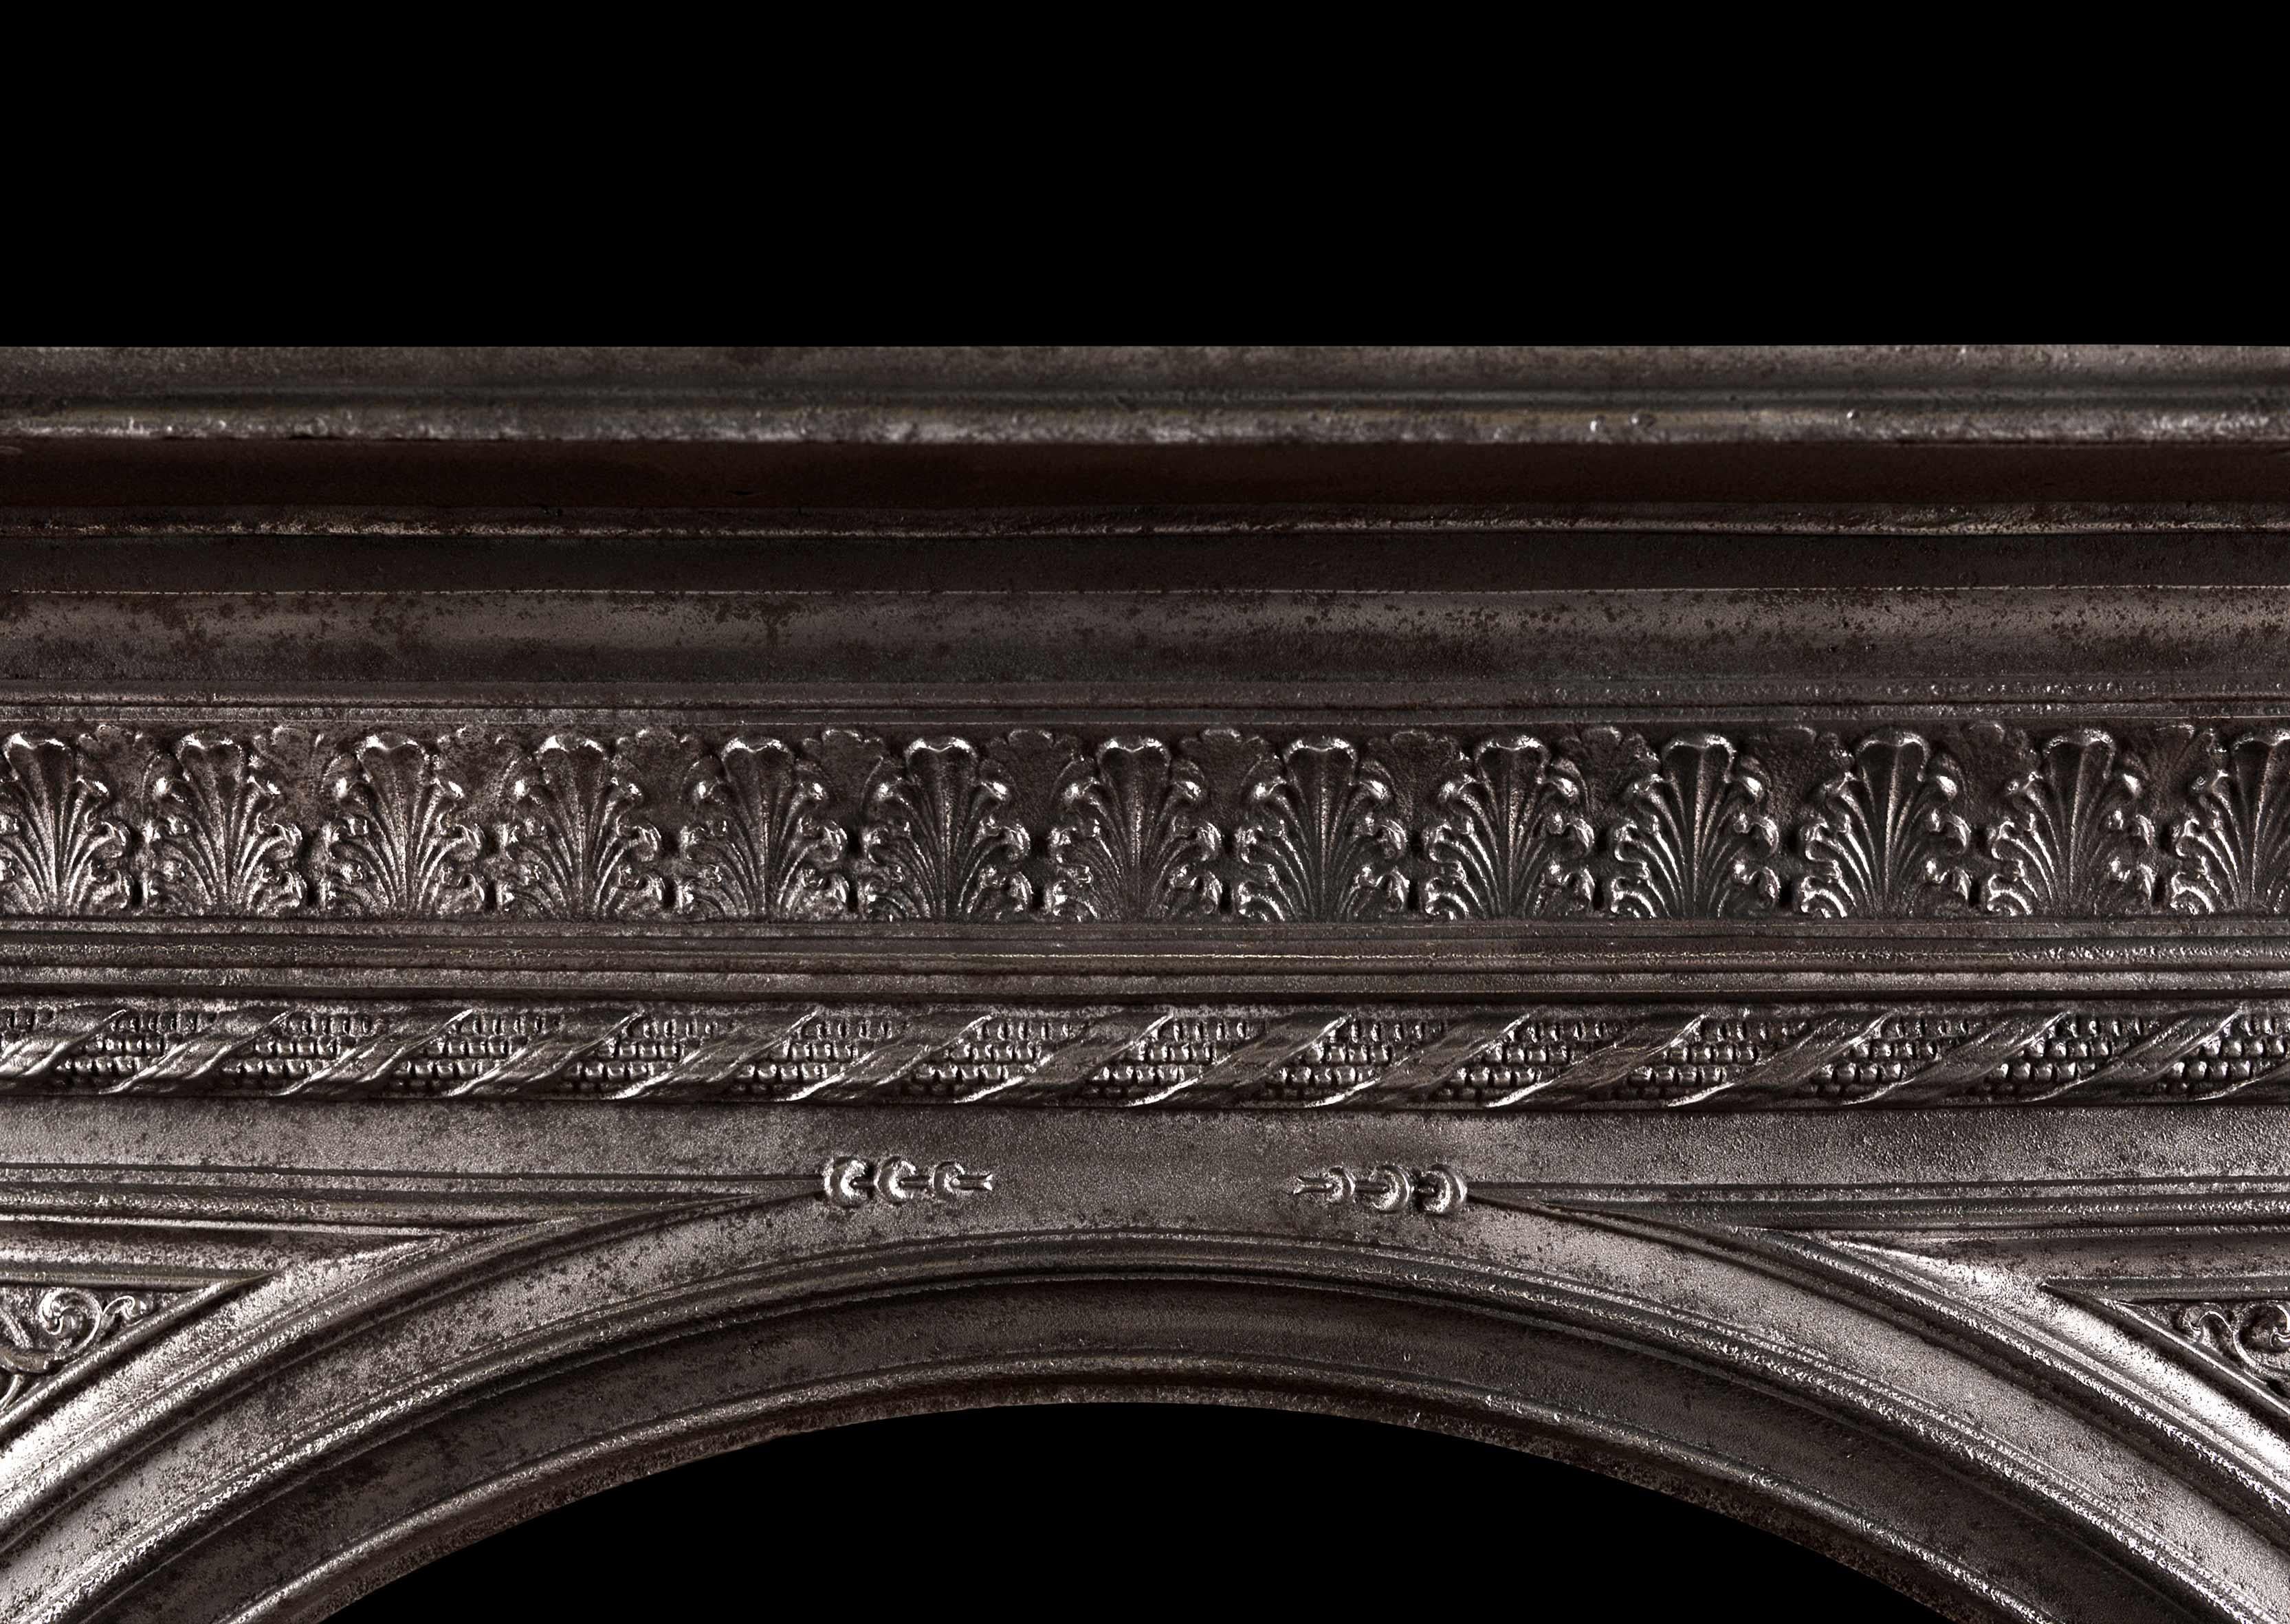 Une jolie cheminée en fonte anglaise du milieu du 19ème siècle. La frise est ornée de feuilles d'acanthe, les montants sont ornés de consoles à volutes et de moulures en corde sur les bords intérieurs et extérieurs. L'ouverture en arc avec des